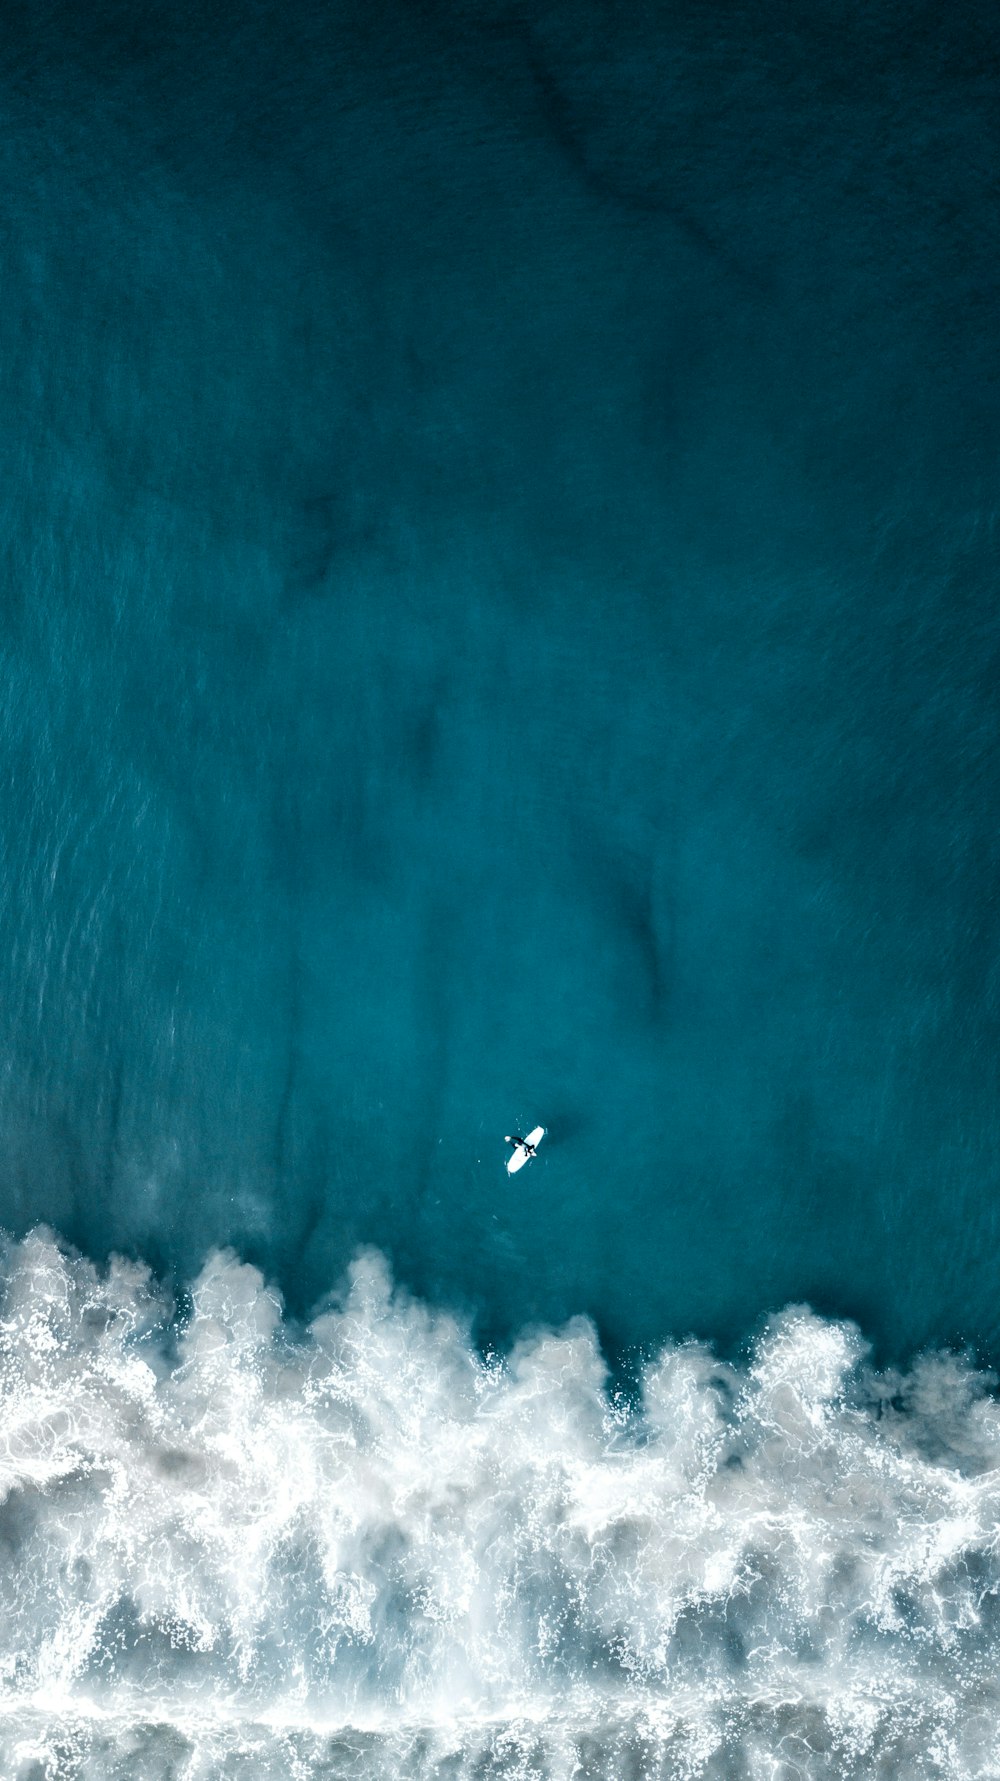 Vista aérea de um surfista surfando uma onda